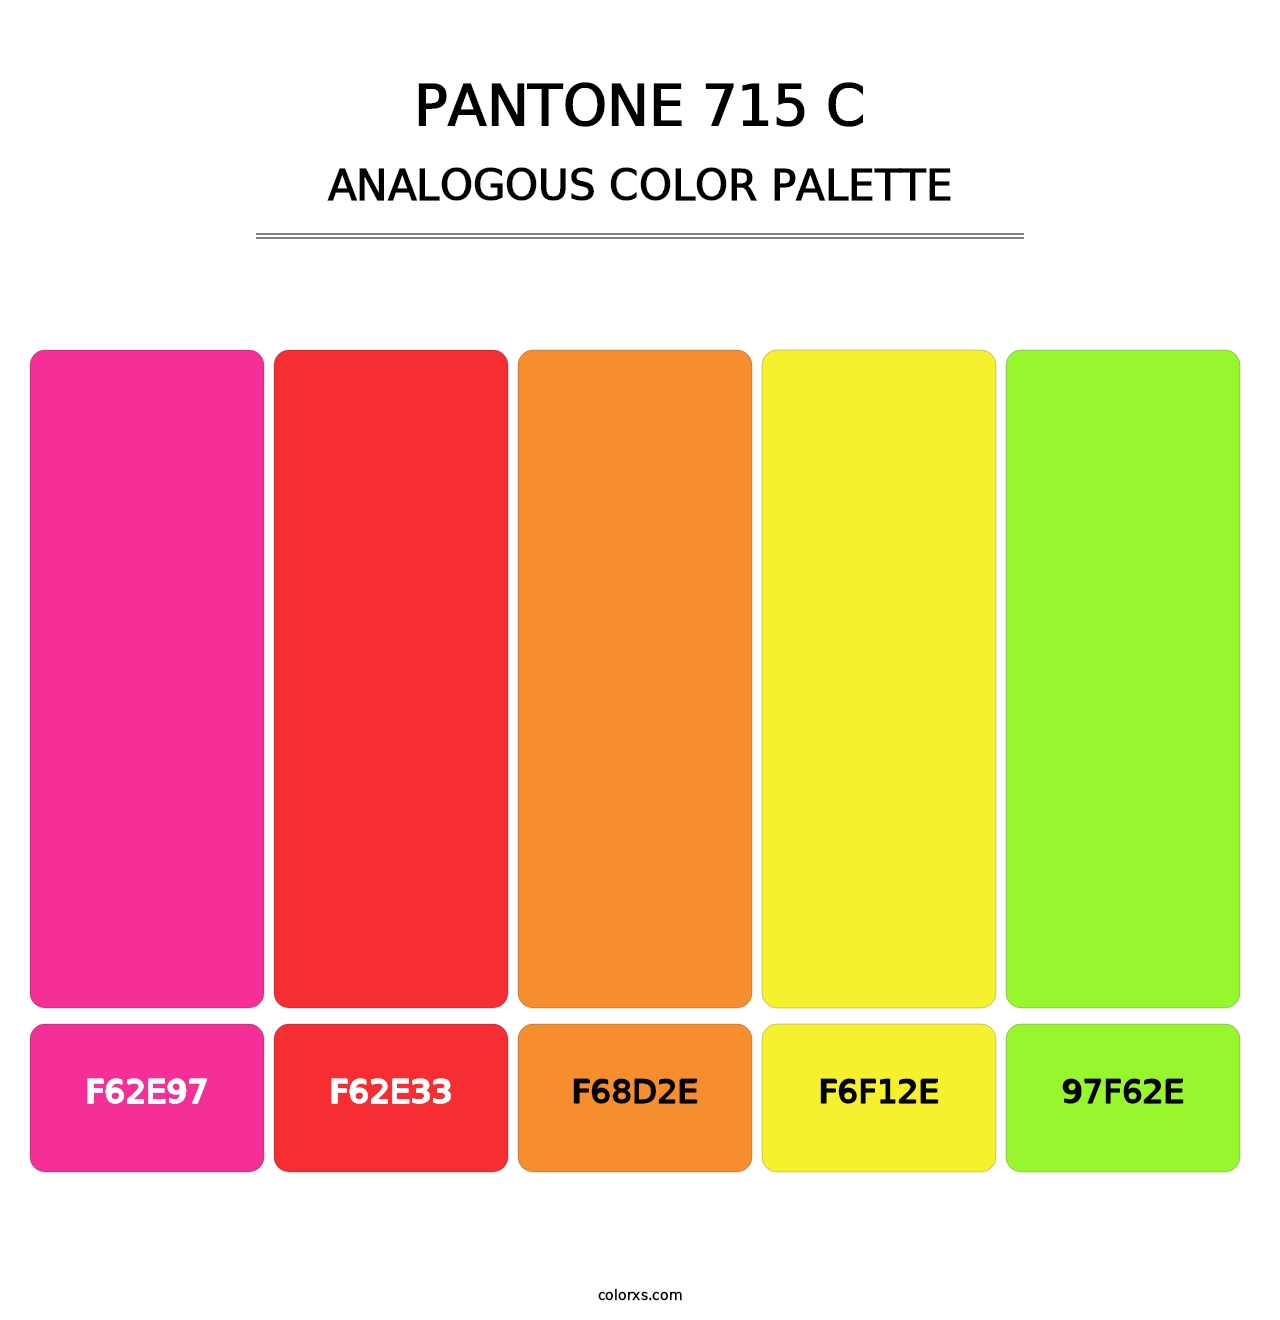 PANTONE 715 C - Analogous Color Palette